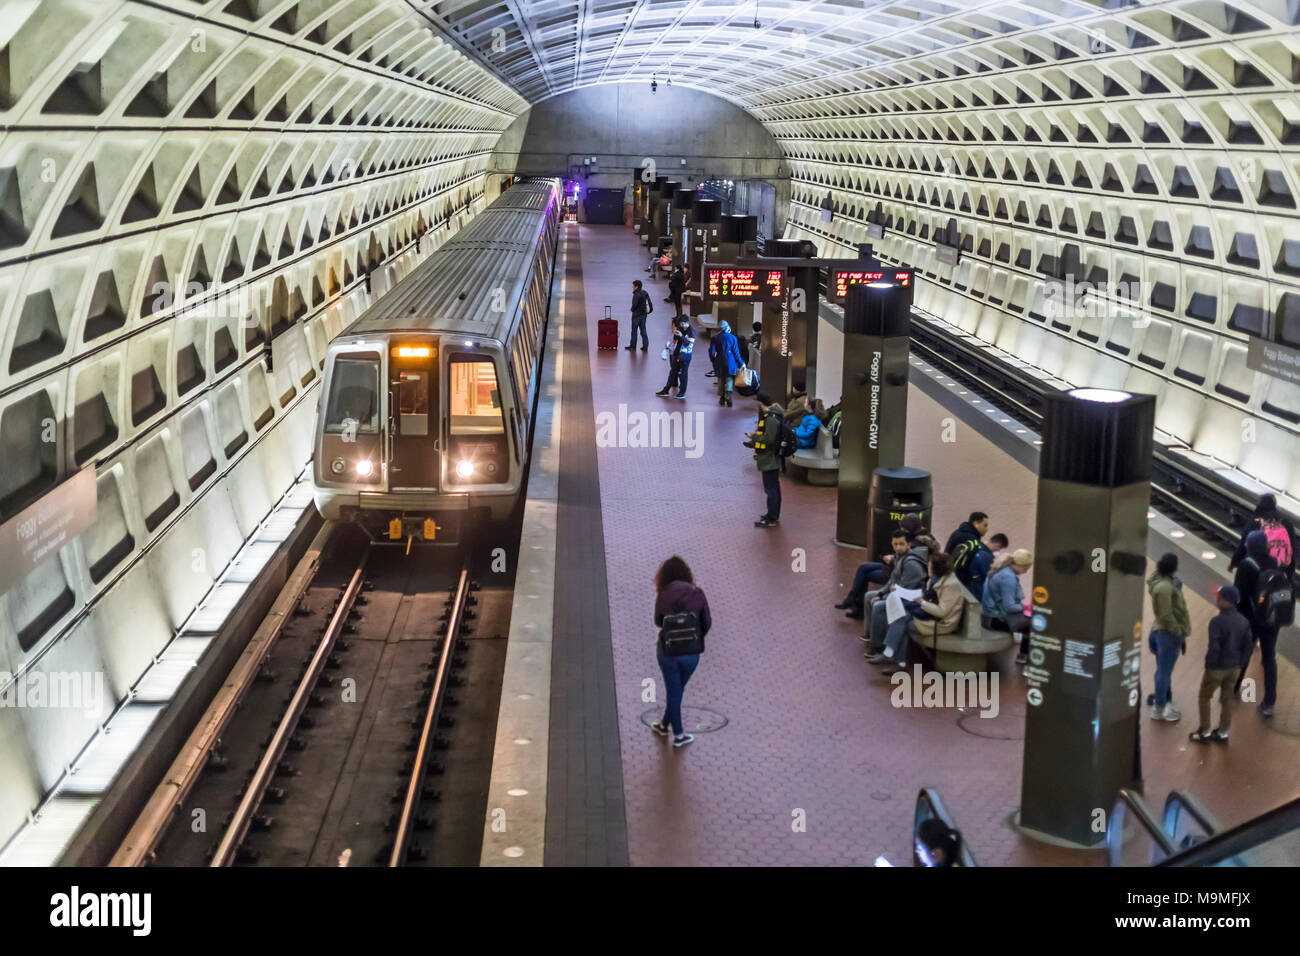 Washington, DC - Washington Metro silver line Subway train arrive à la gare Foggy Bottom-GWU. Banque D'Images